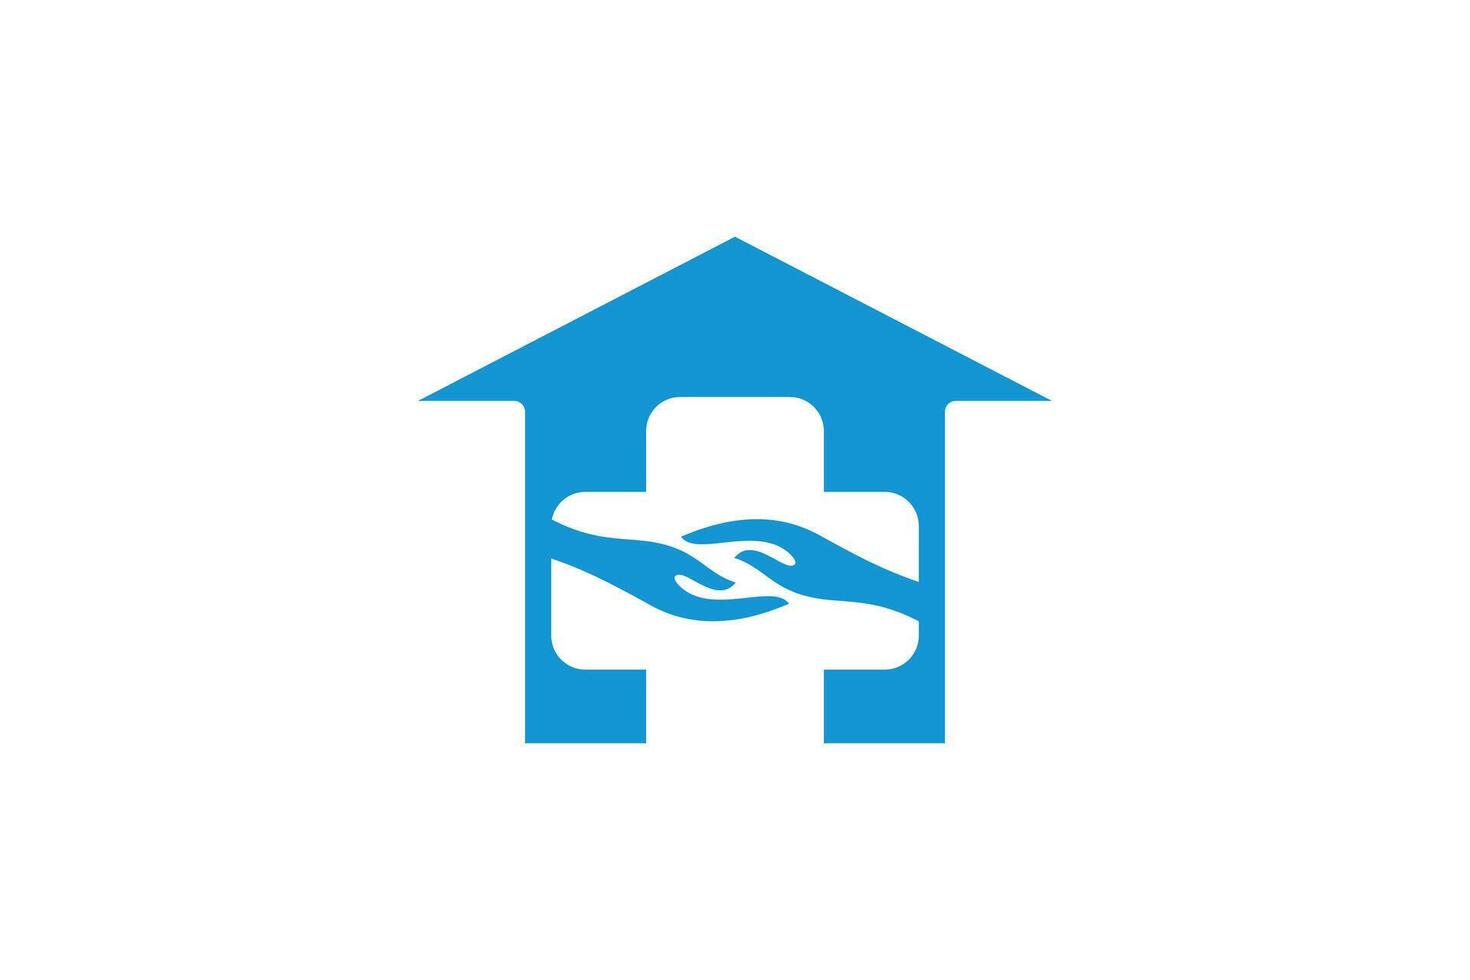 medical logo design with house logo concept premium vector